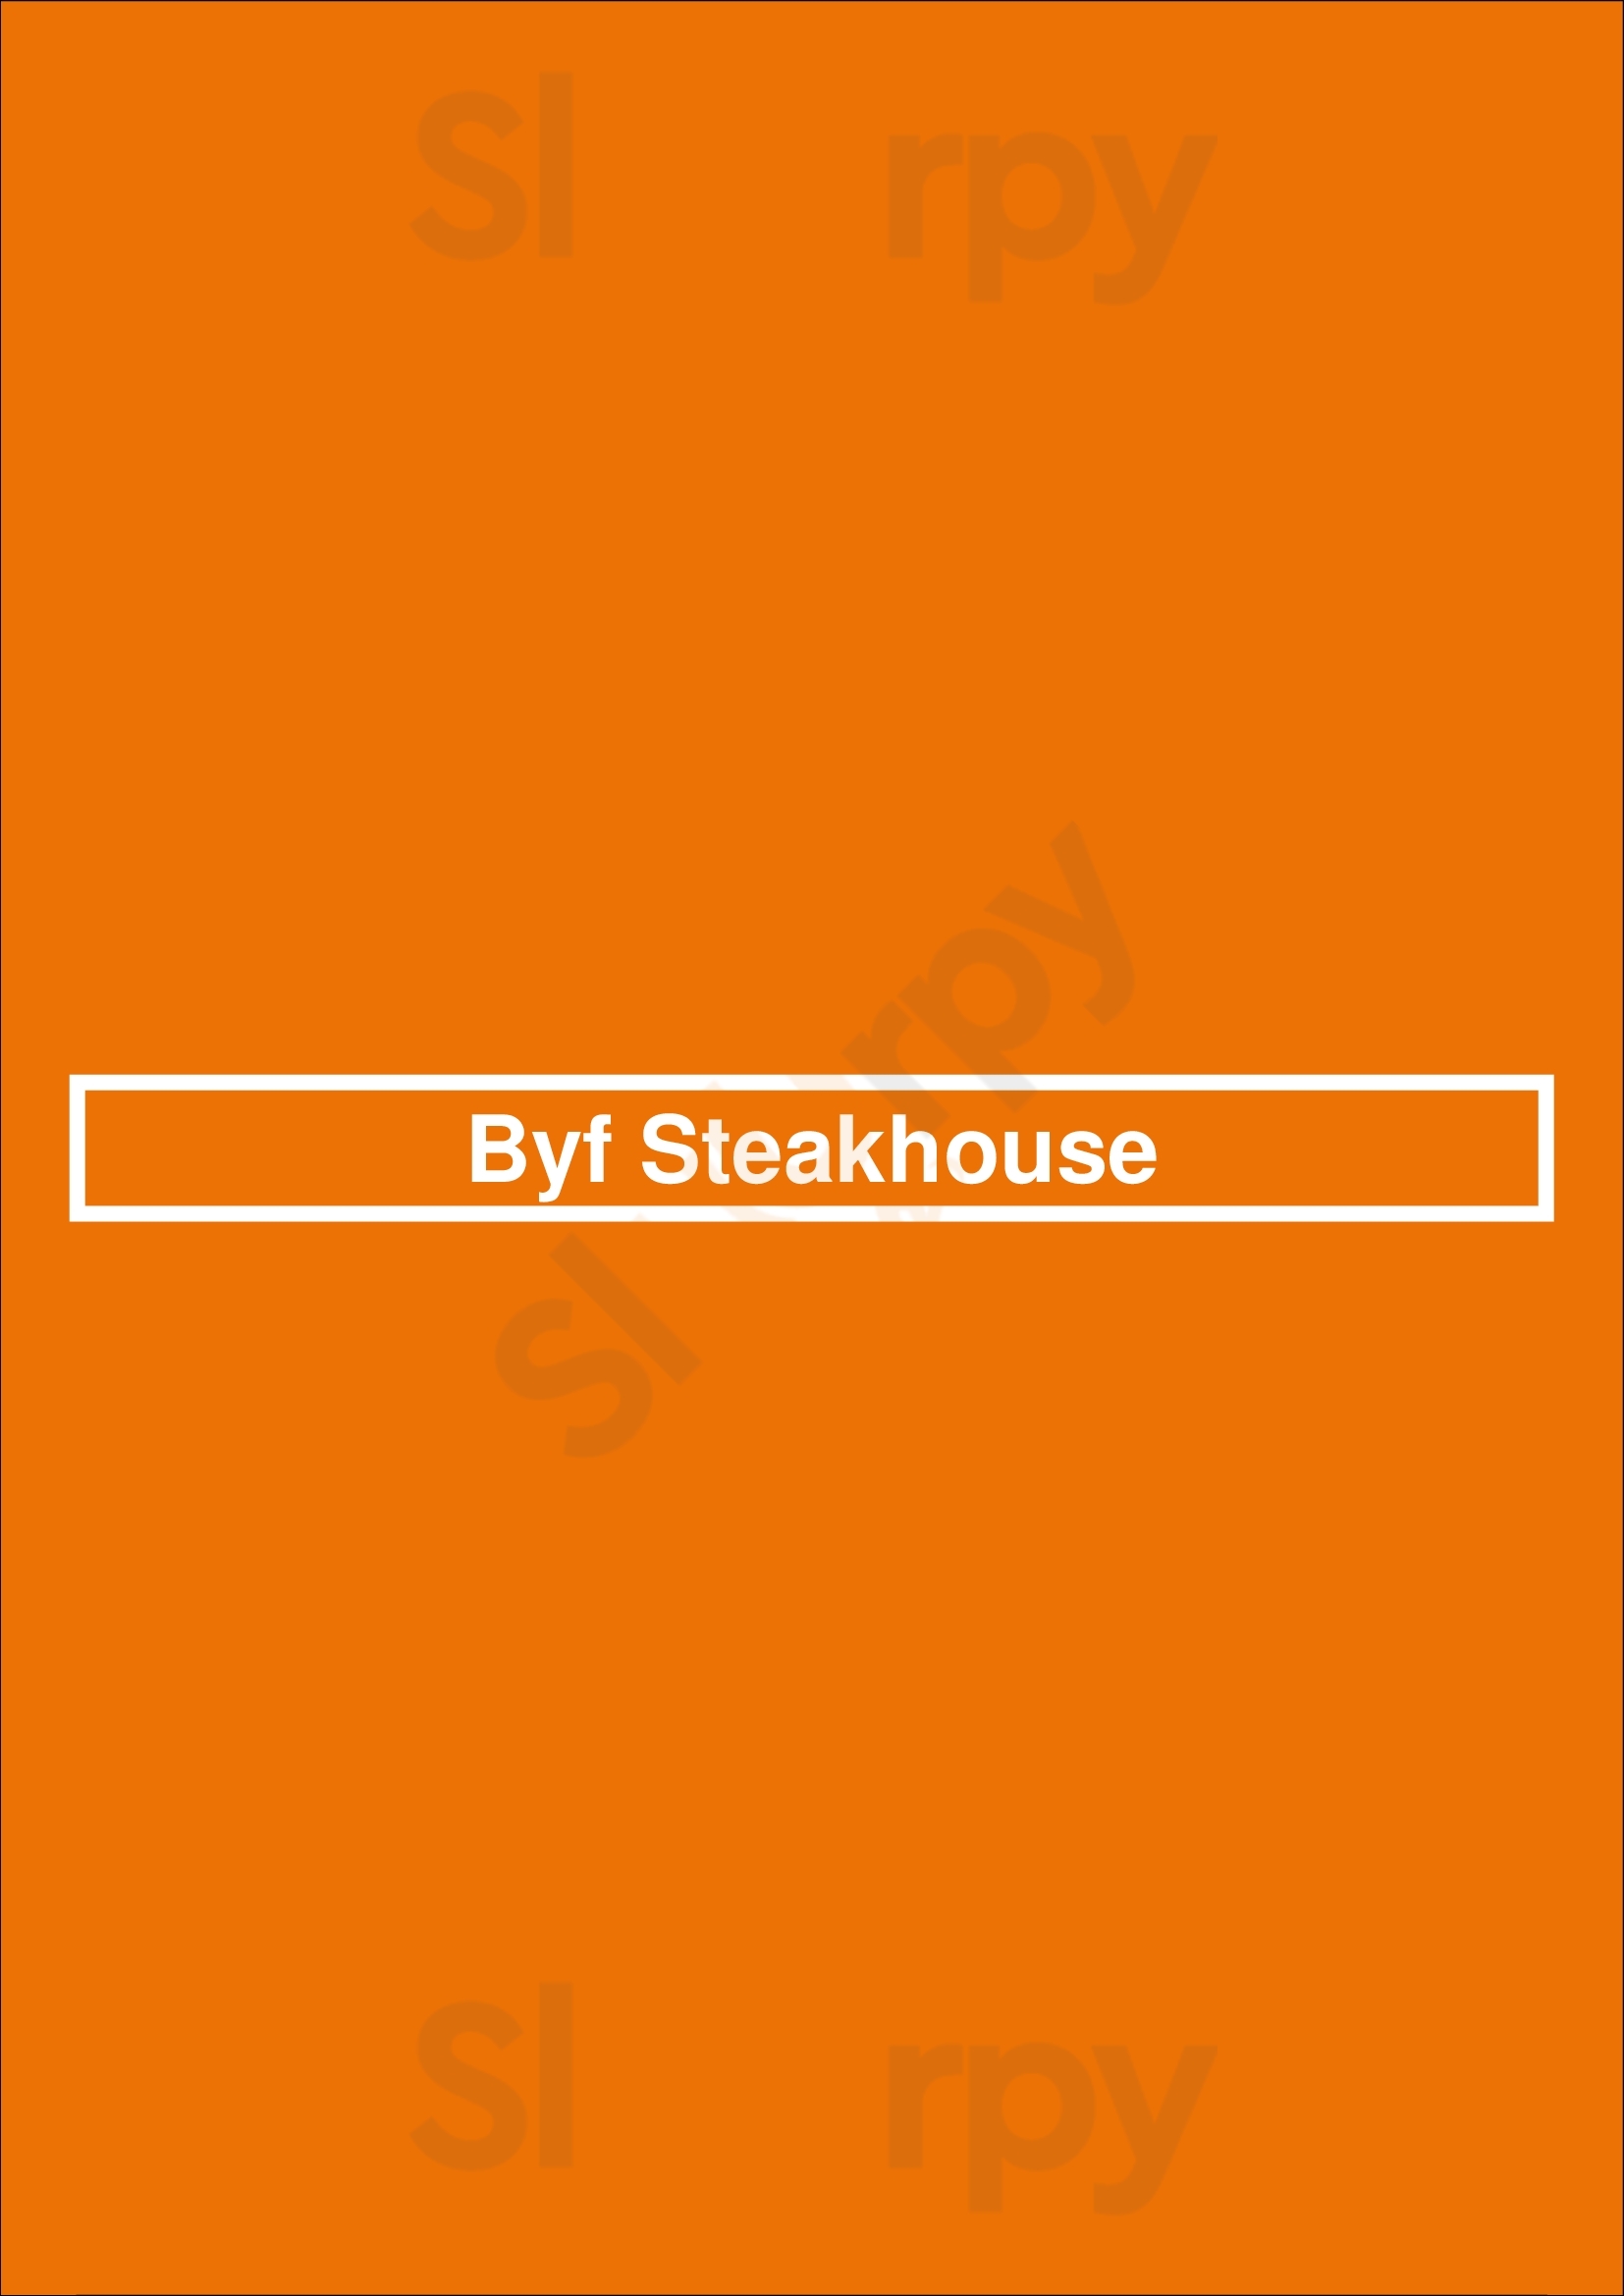 Byf Steakhouse Lisboa Menu - 1